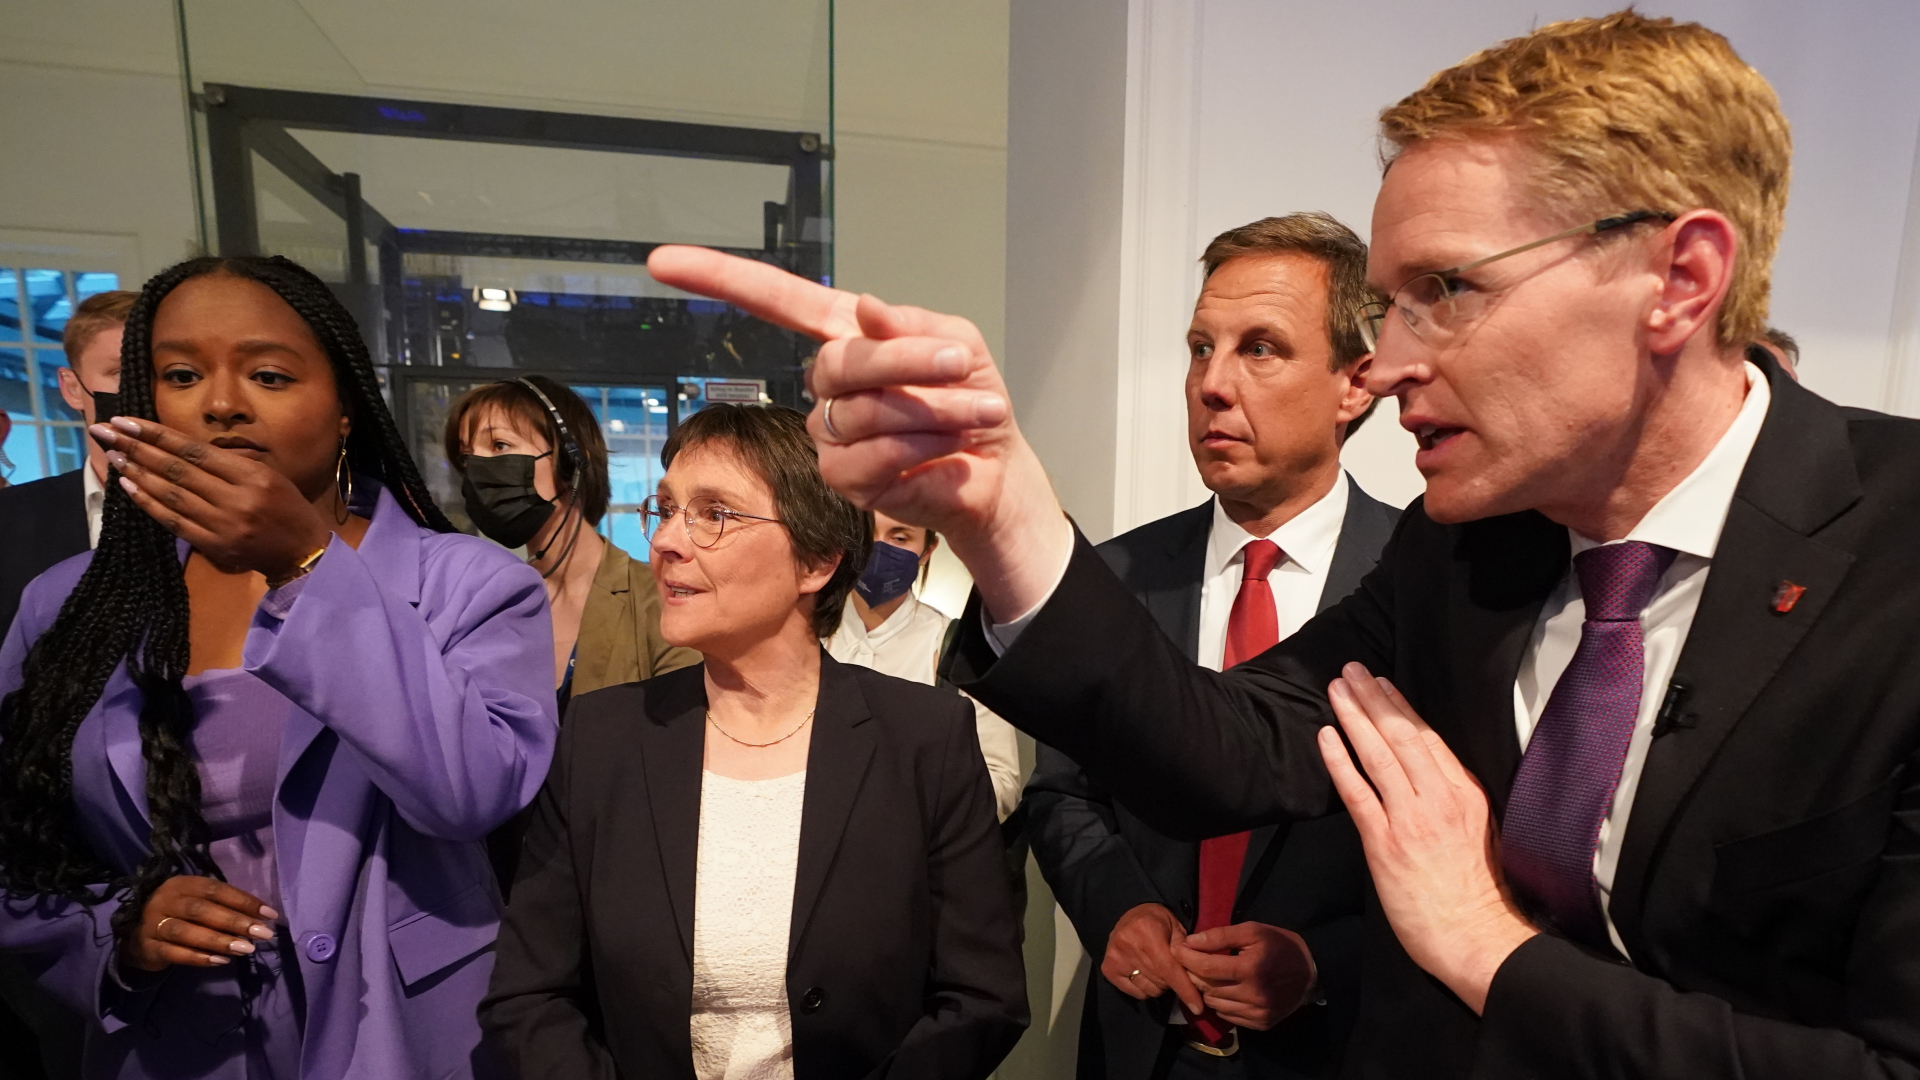 Wahlsieger Günther zeigt mit dem Finger Richtung Fernsehstudio | dpa